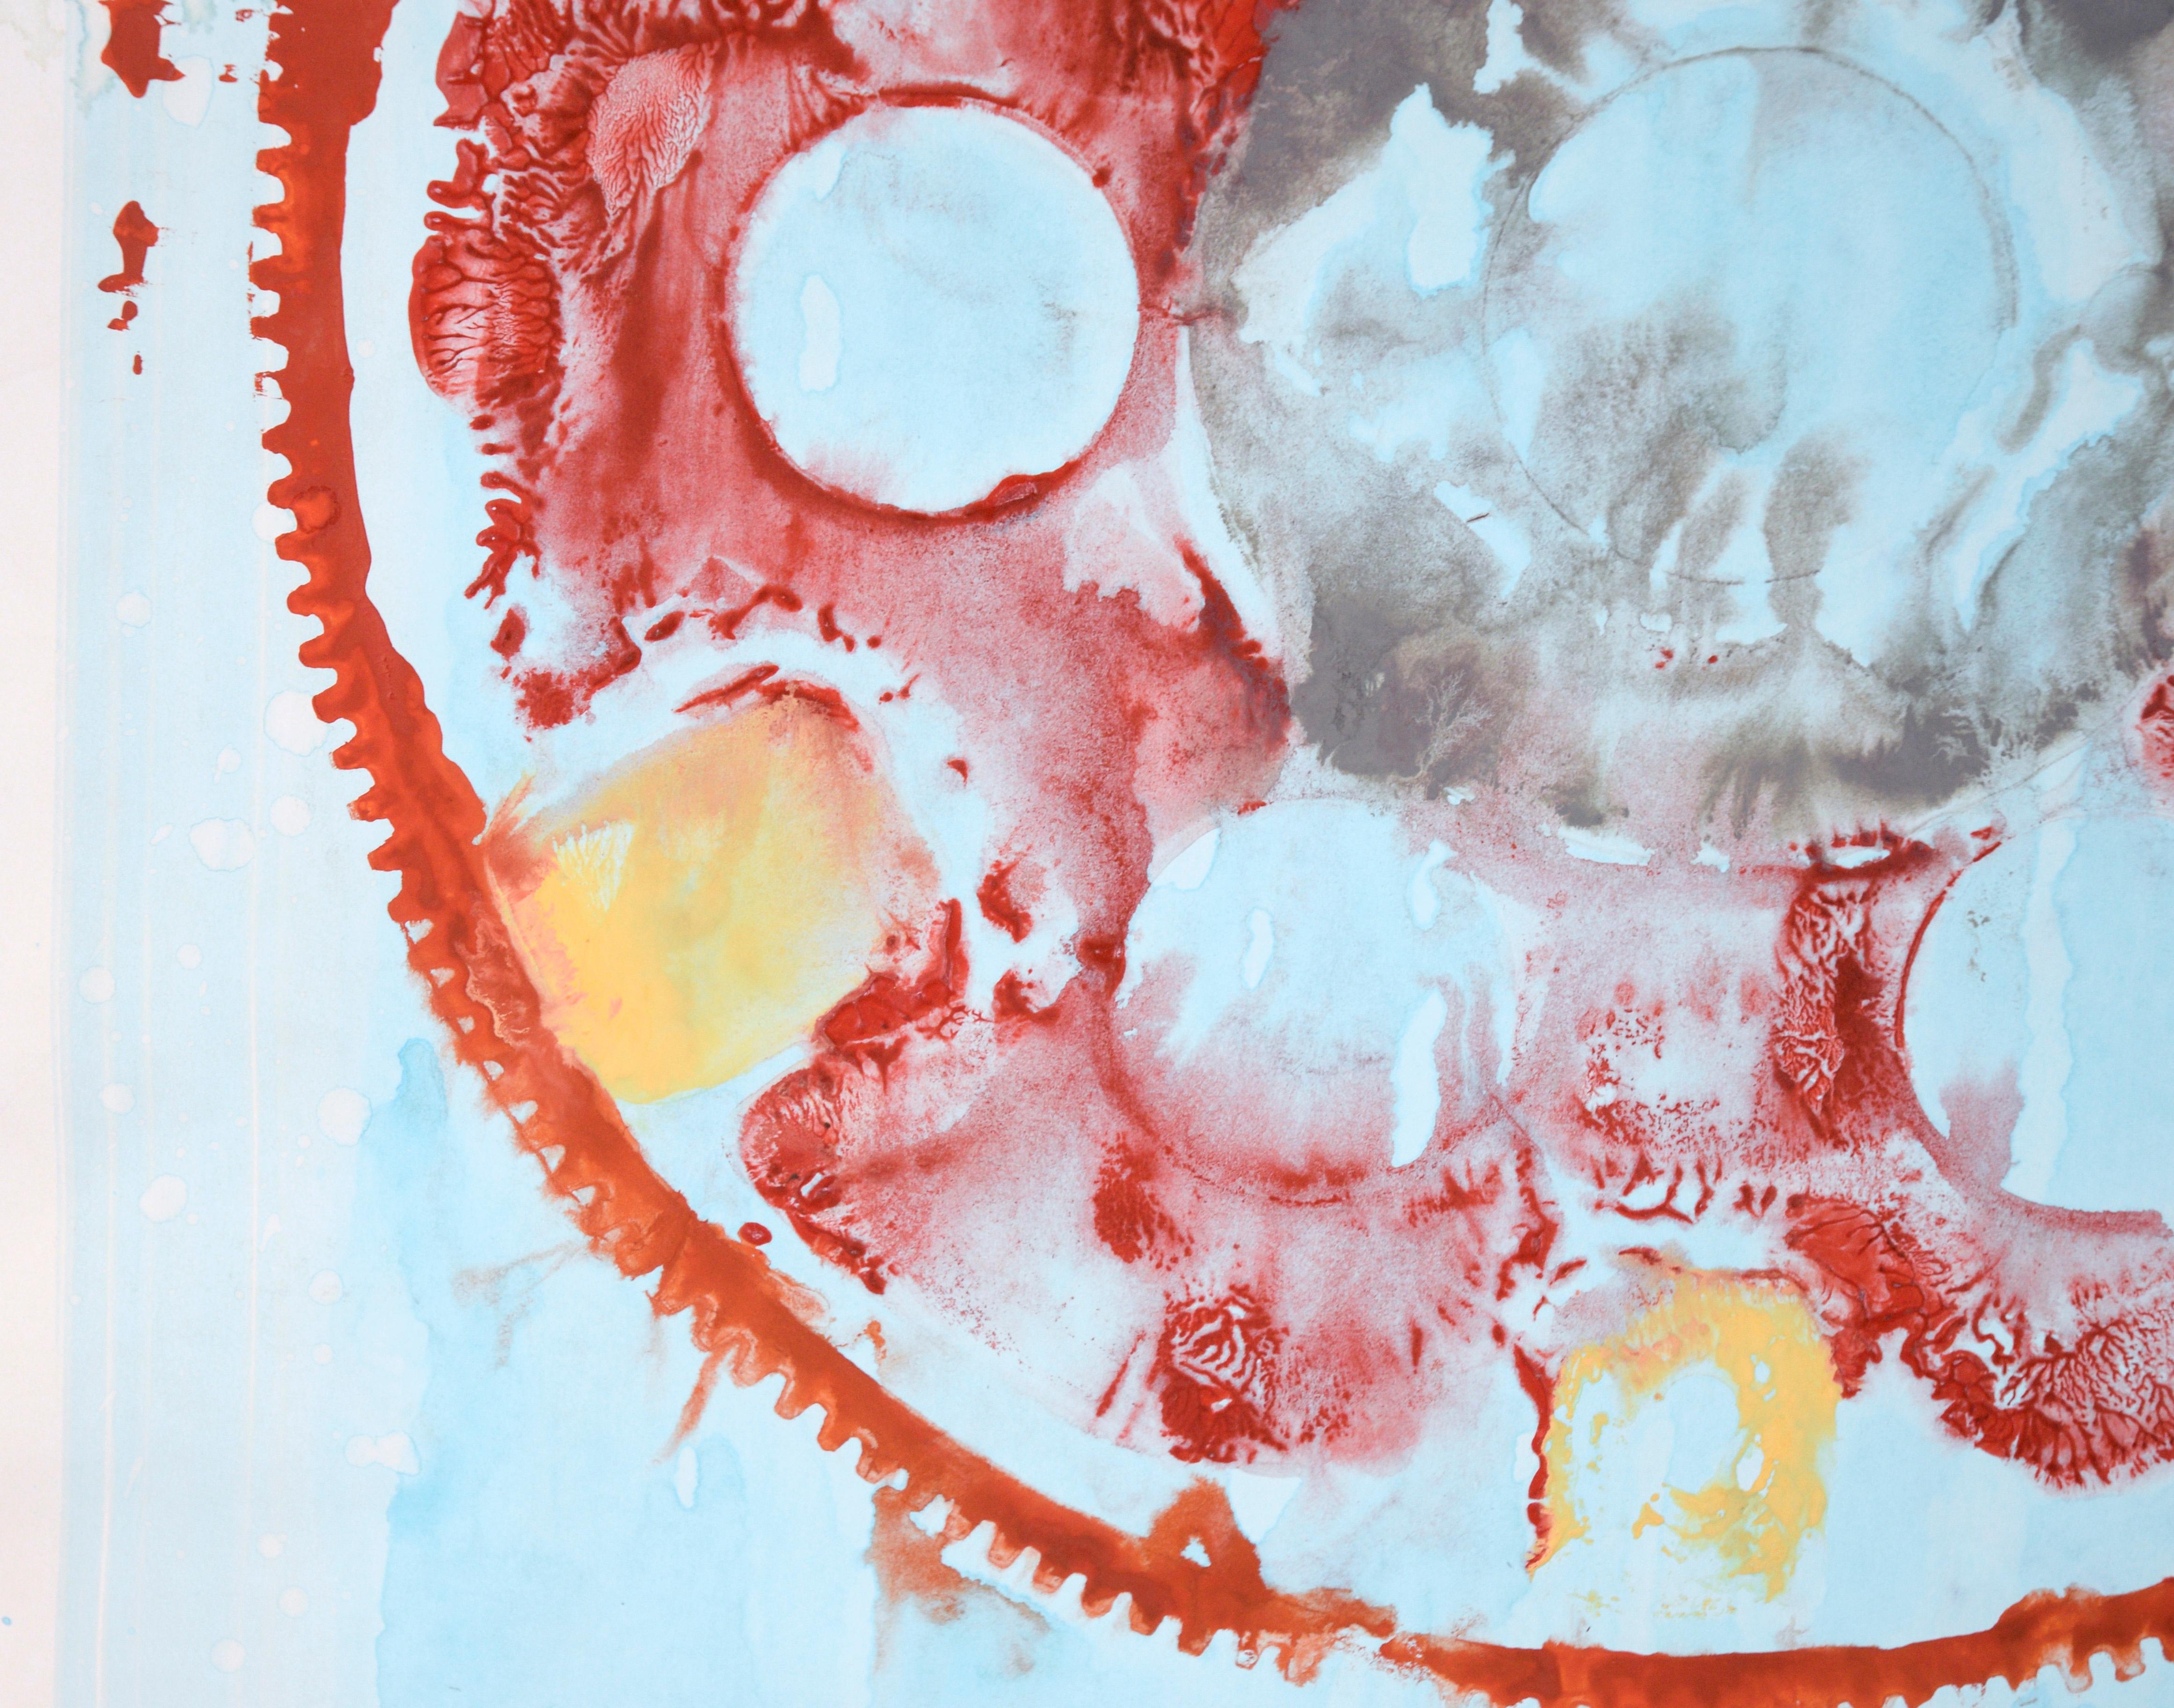 Get in Gear - Mandala expressionniste abstrait géométrique en acrylique sur papier

Une peinture abstraite audacieuse en rouge de l'artiste californien Ricardo de Silva (Américain/Brésil, C.C.). Un grand engrenage (peut-être un plateau flexible de